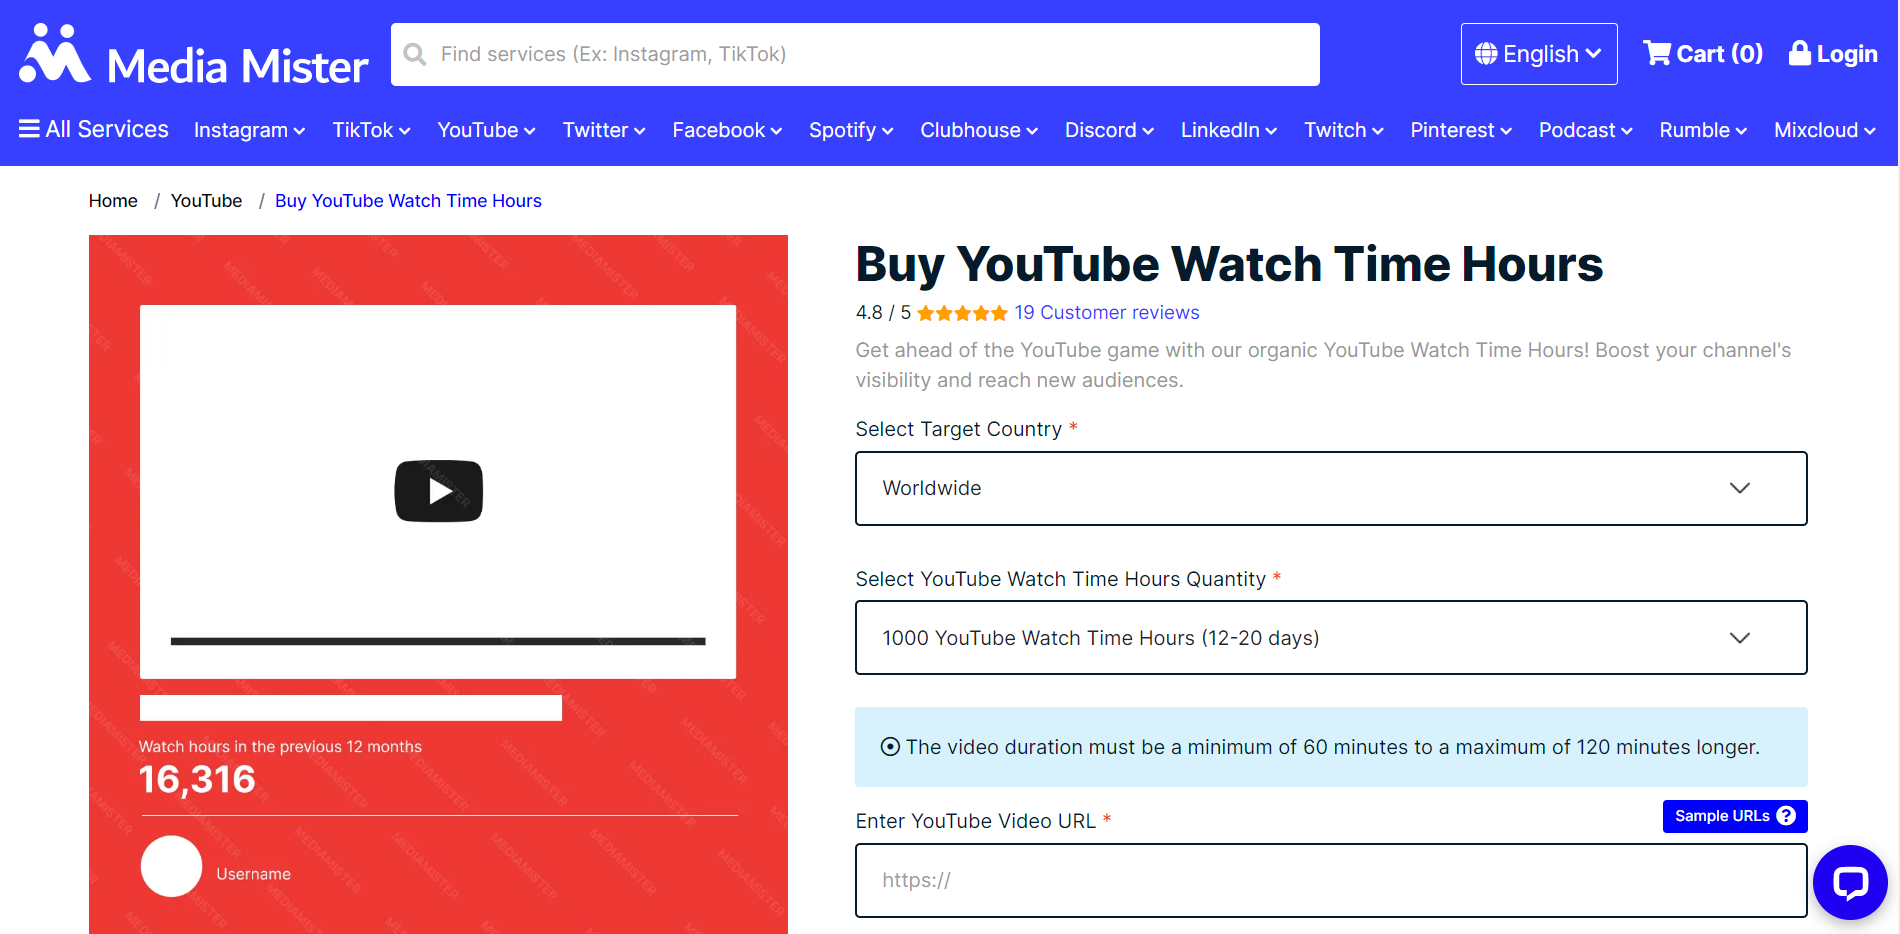 acquistare watchhours di YouTube economici